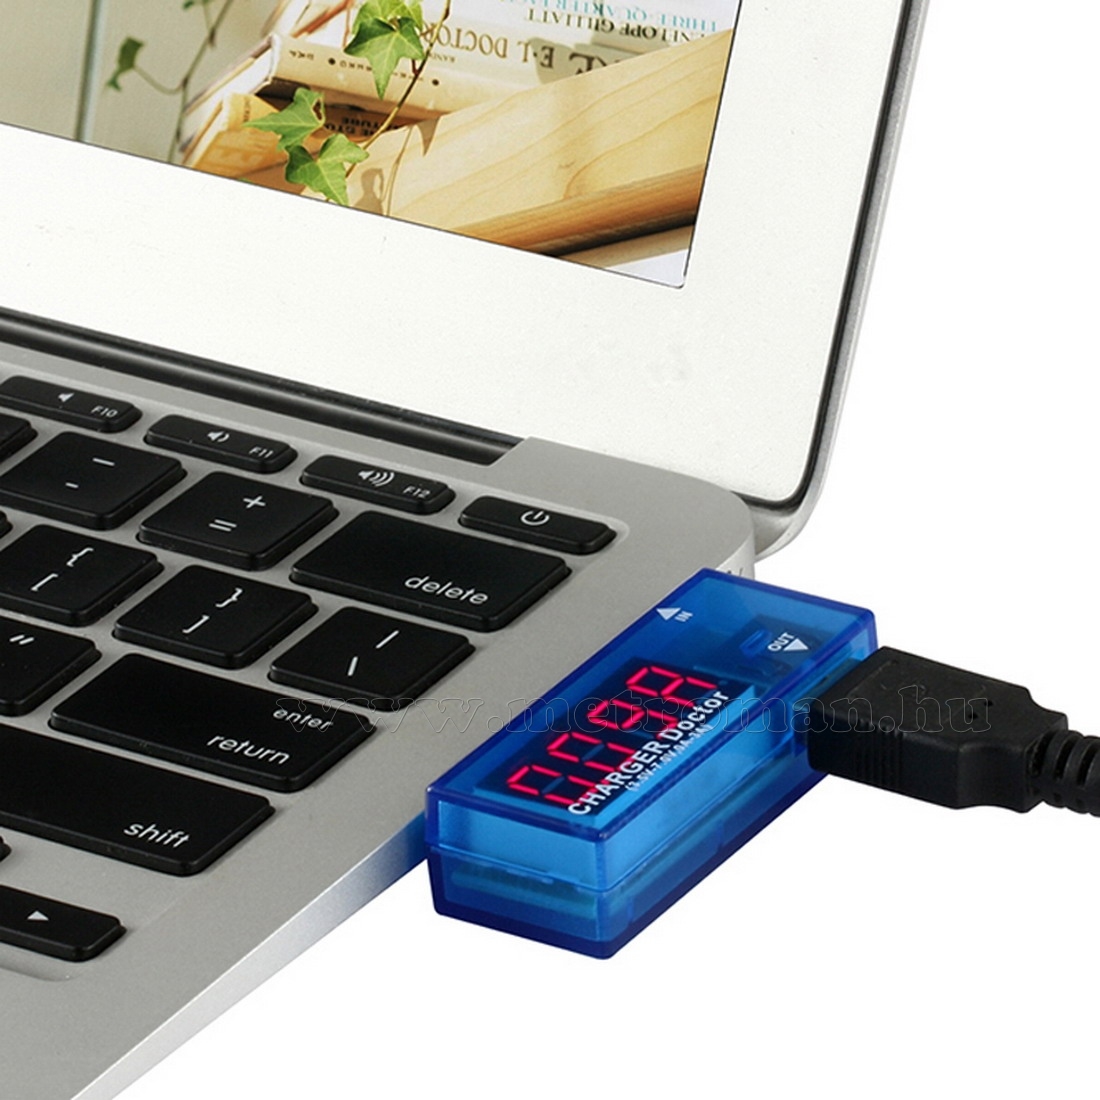 USB tesztelő, USB voltmérő, feszültségmérő és árammérő, Mlogic M306B